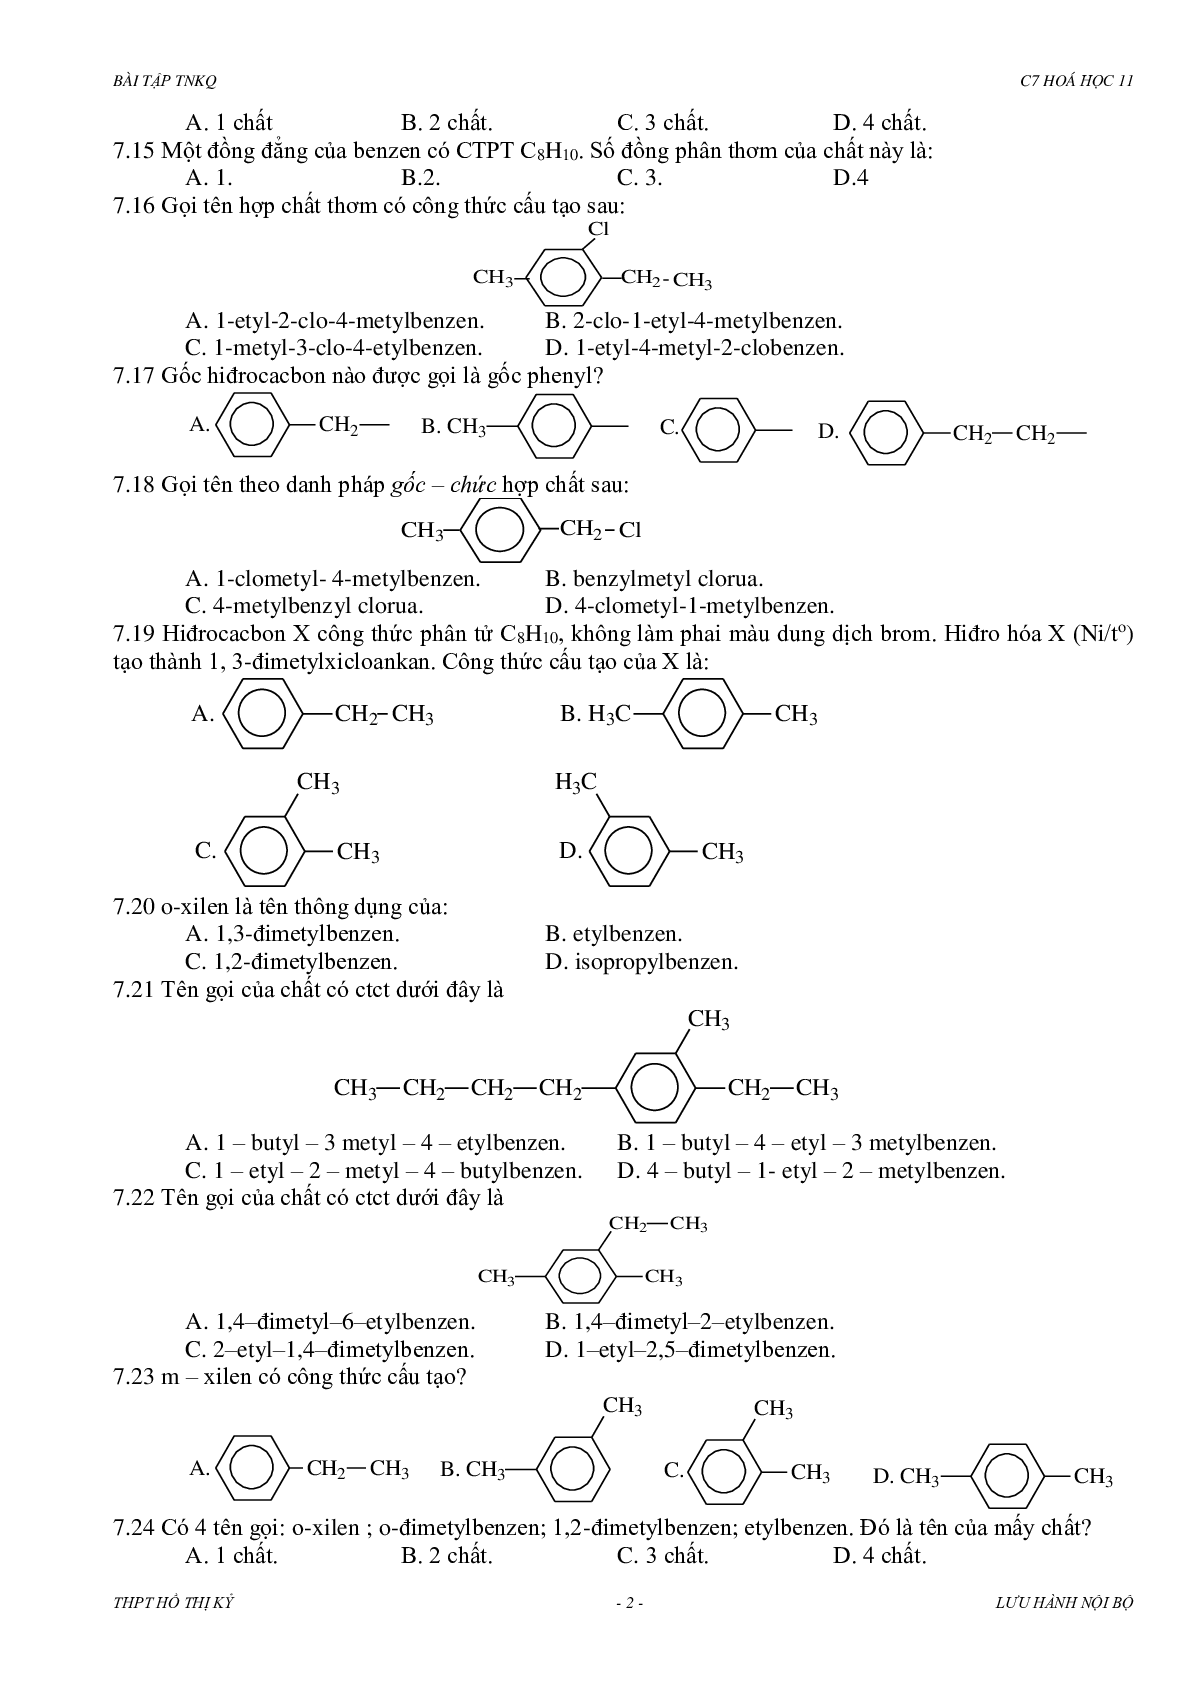 Bài tập về hidrocacbon thơm có đáp án, chọn lọc (trang 2)